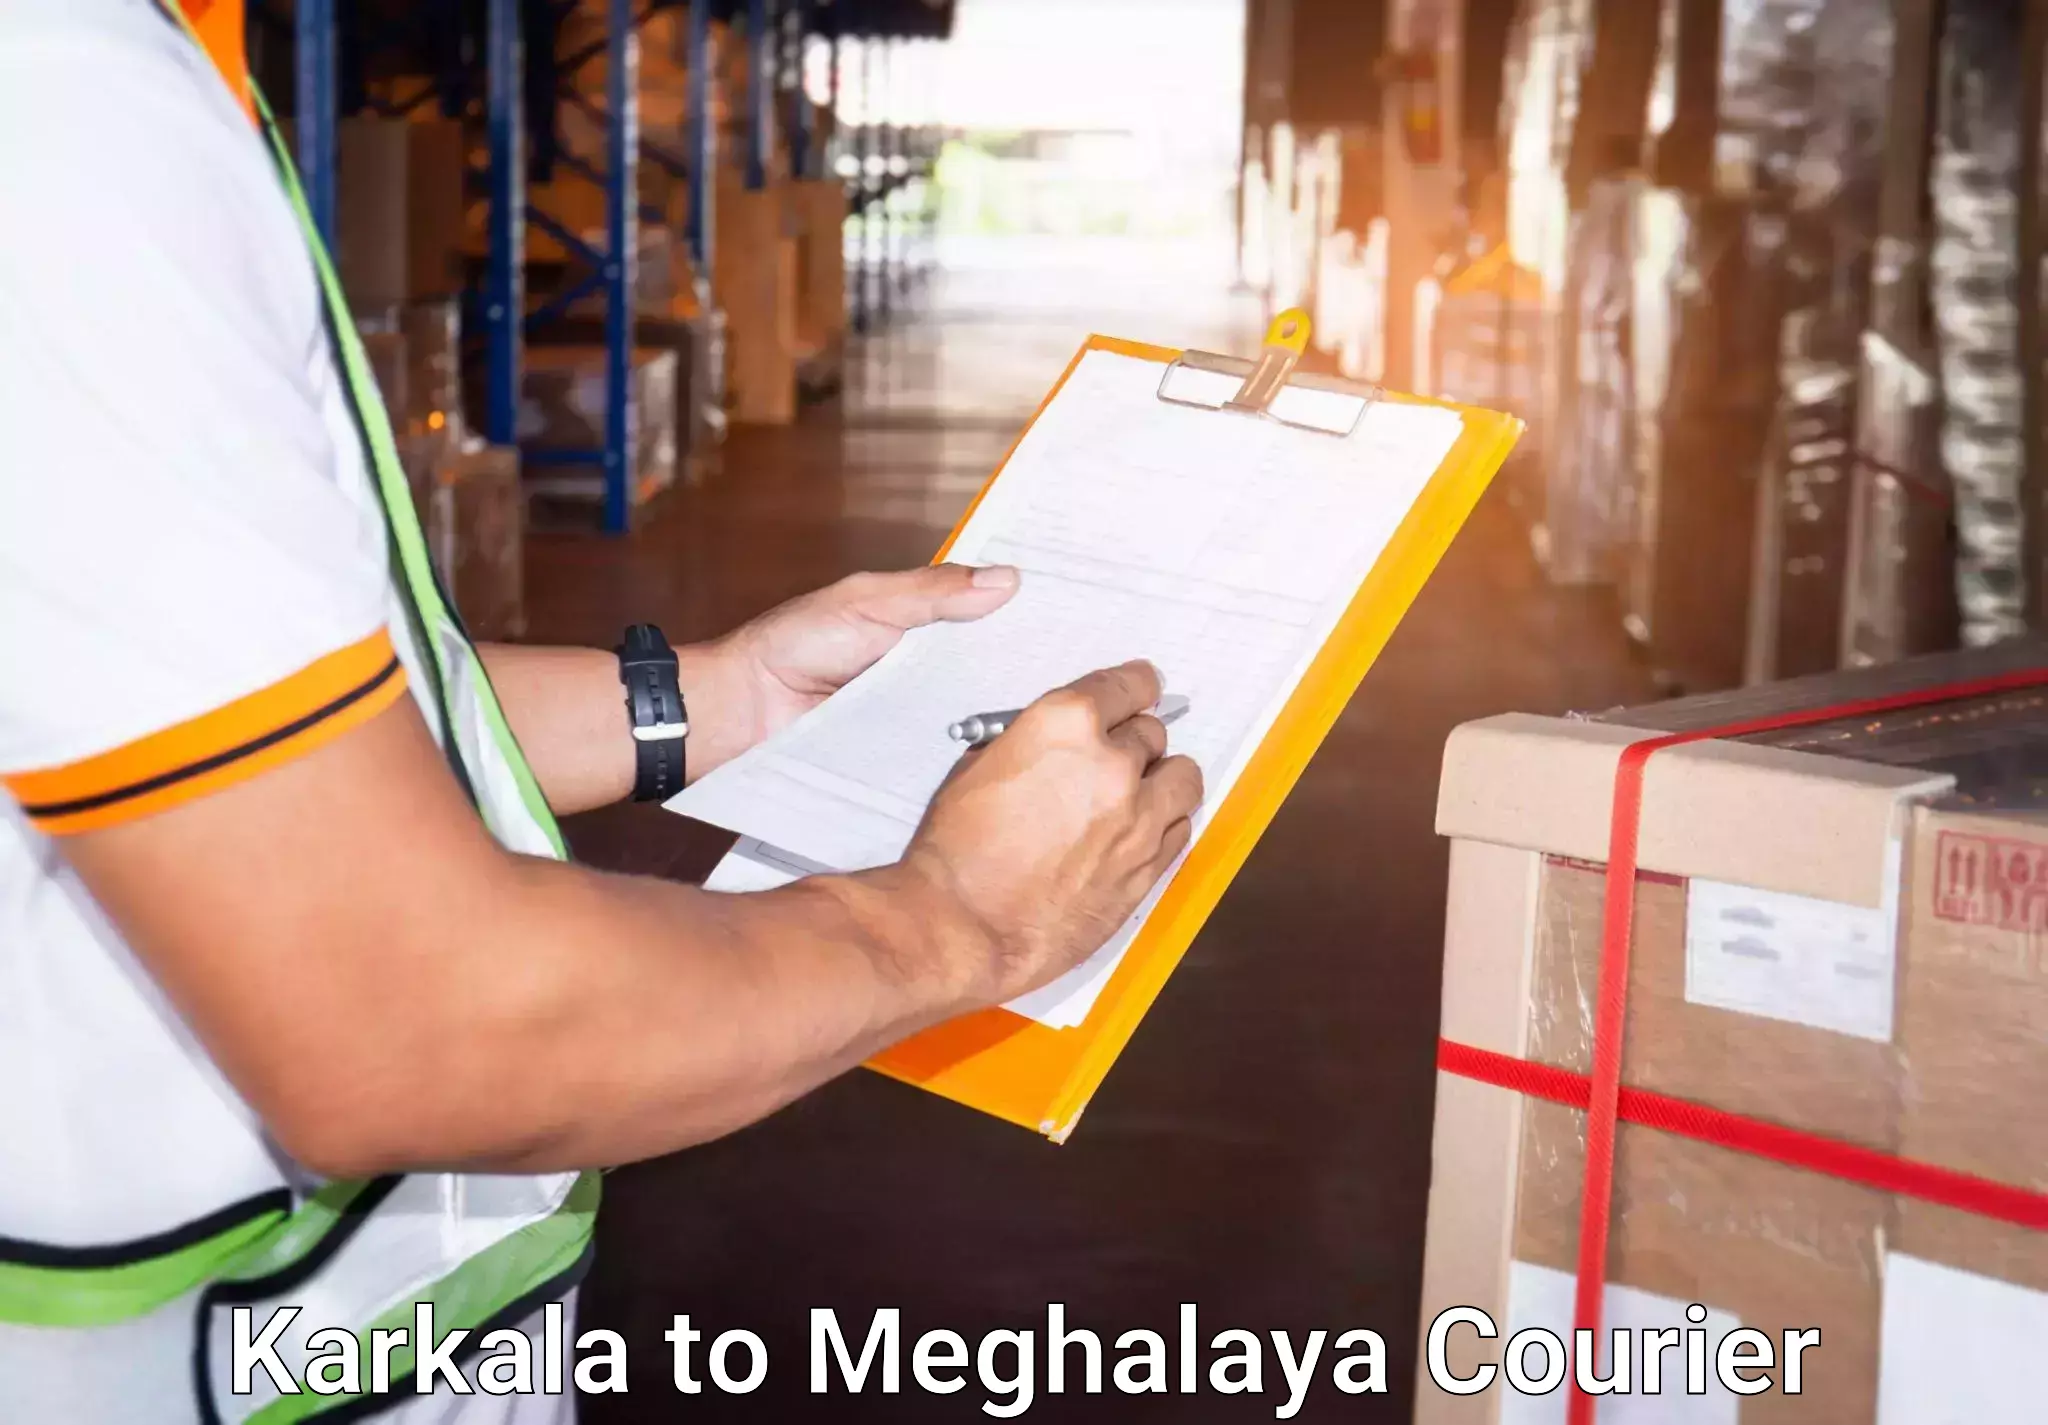 Baggage transport scheduler Karkala to Meghalaya